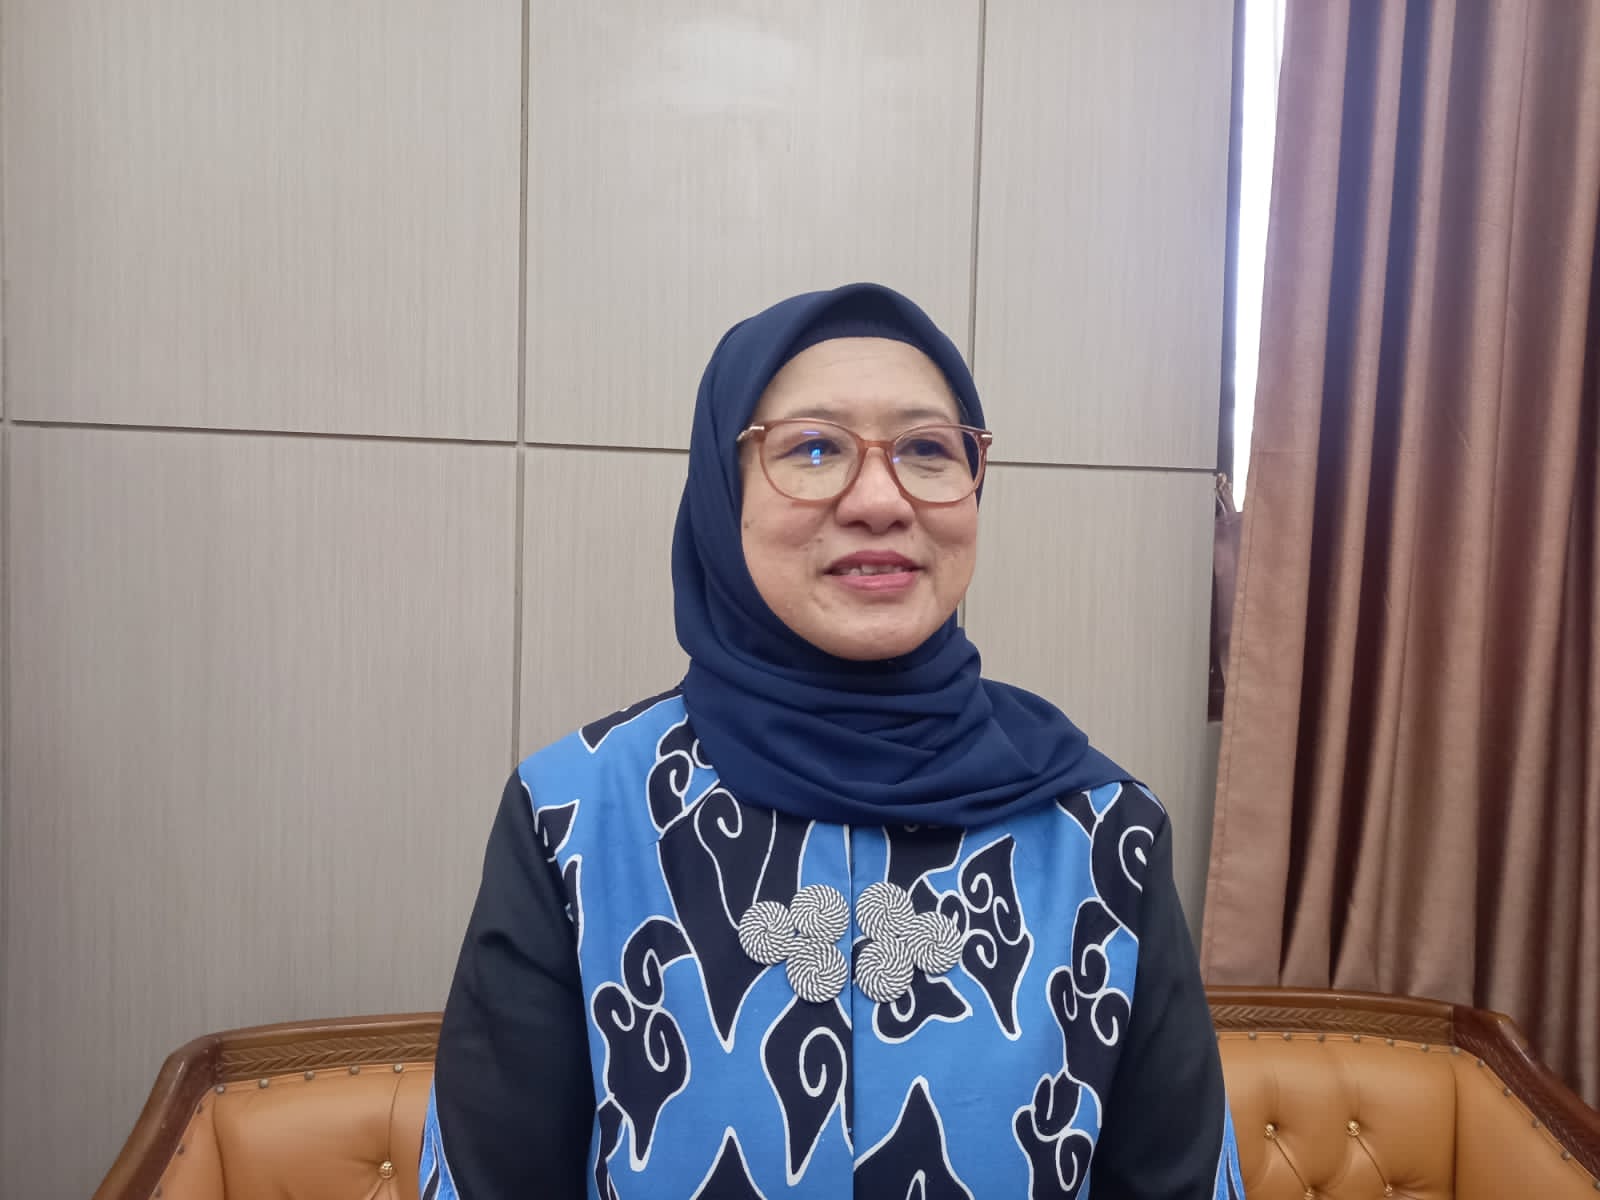 Masuk Jajaran Panelis Debat ke 2 Capres dan Cawapres, Ini kata Rektor Universitas Bengkulu